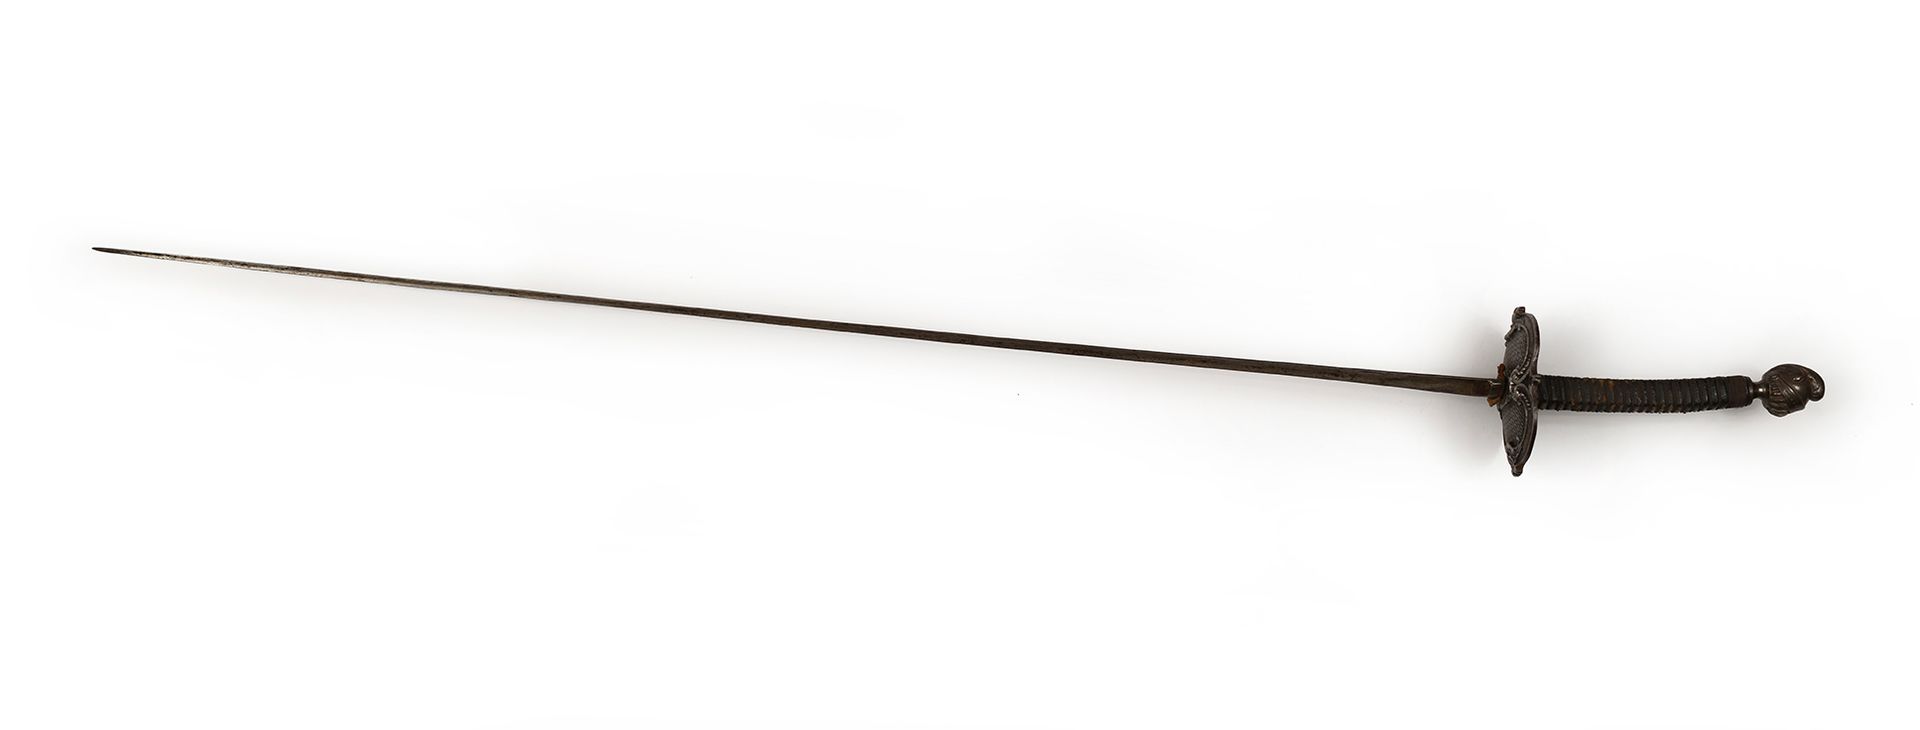 Null 1870年至1890年间的决斗训练剑，右手，皮革和黄铜手柄。钢制外壳和钢制鞍座，呈骑士头盔形状。
刀片长度为87厘米。